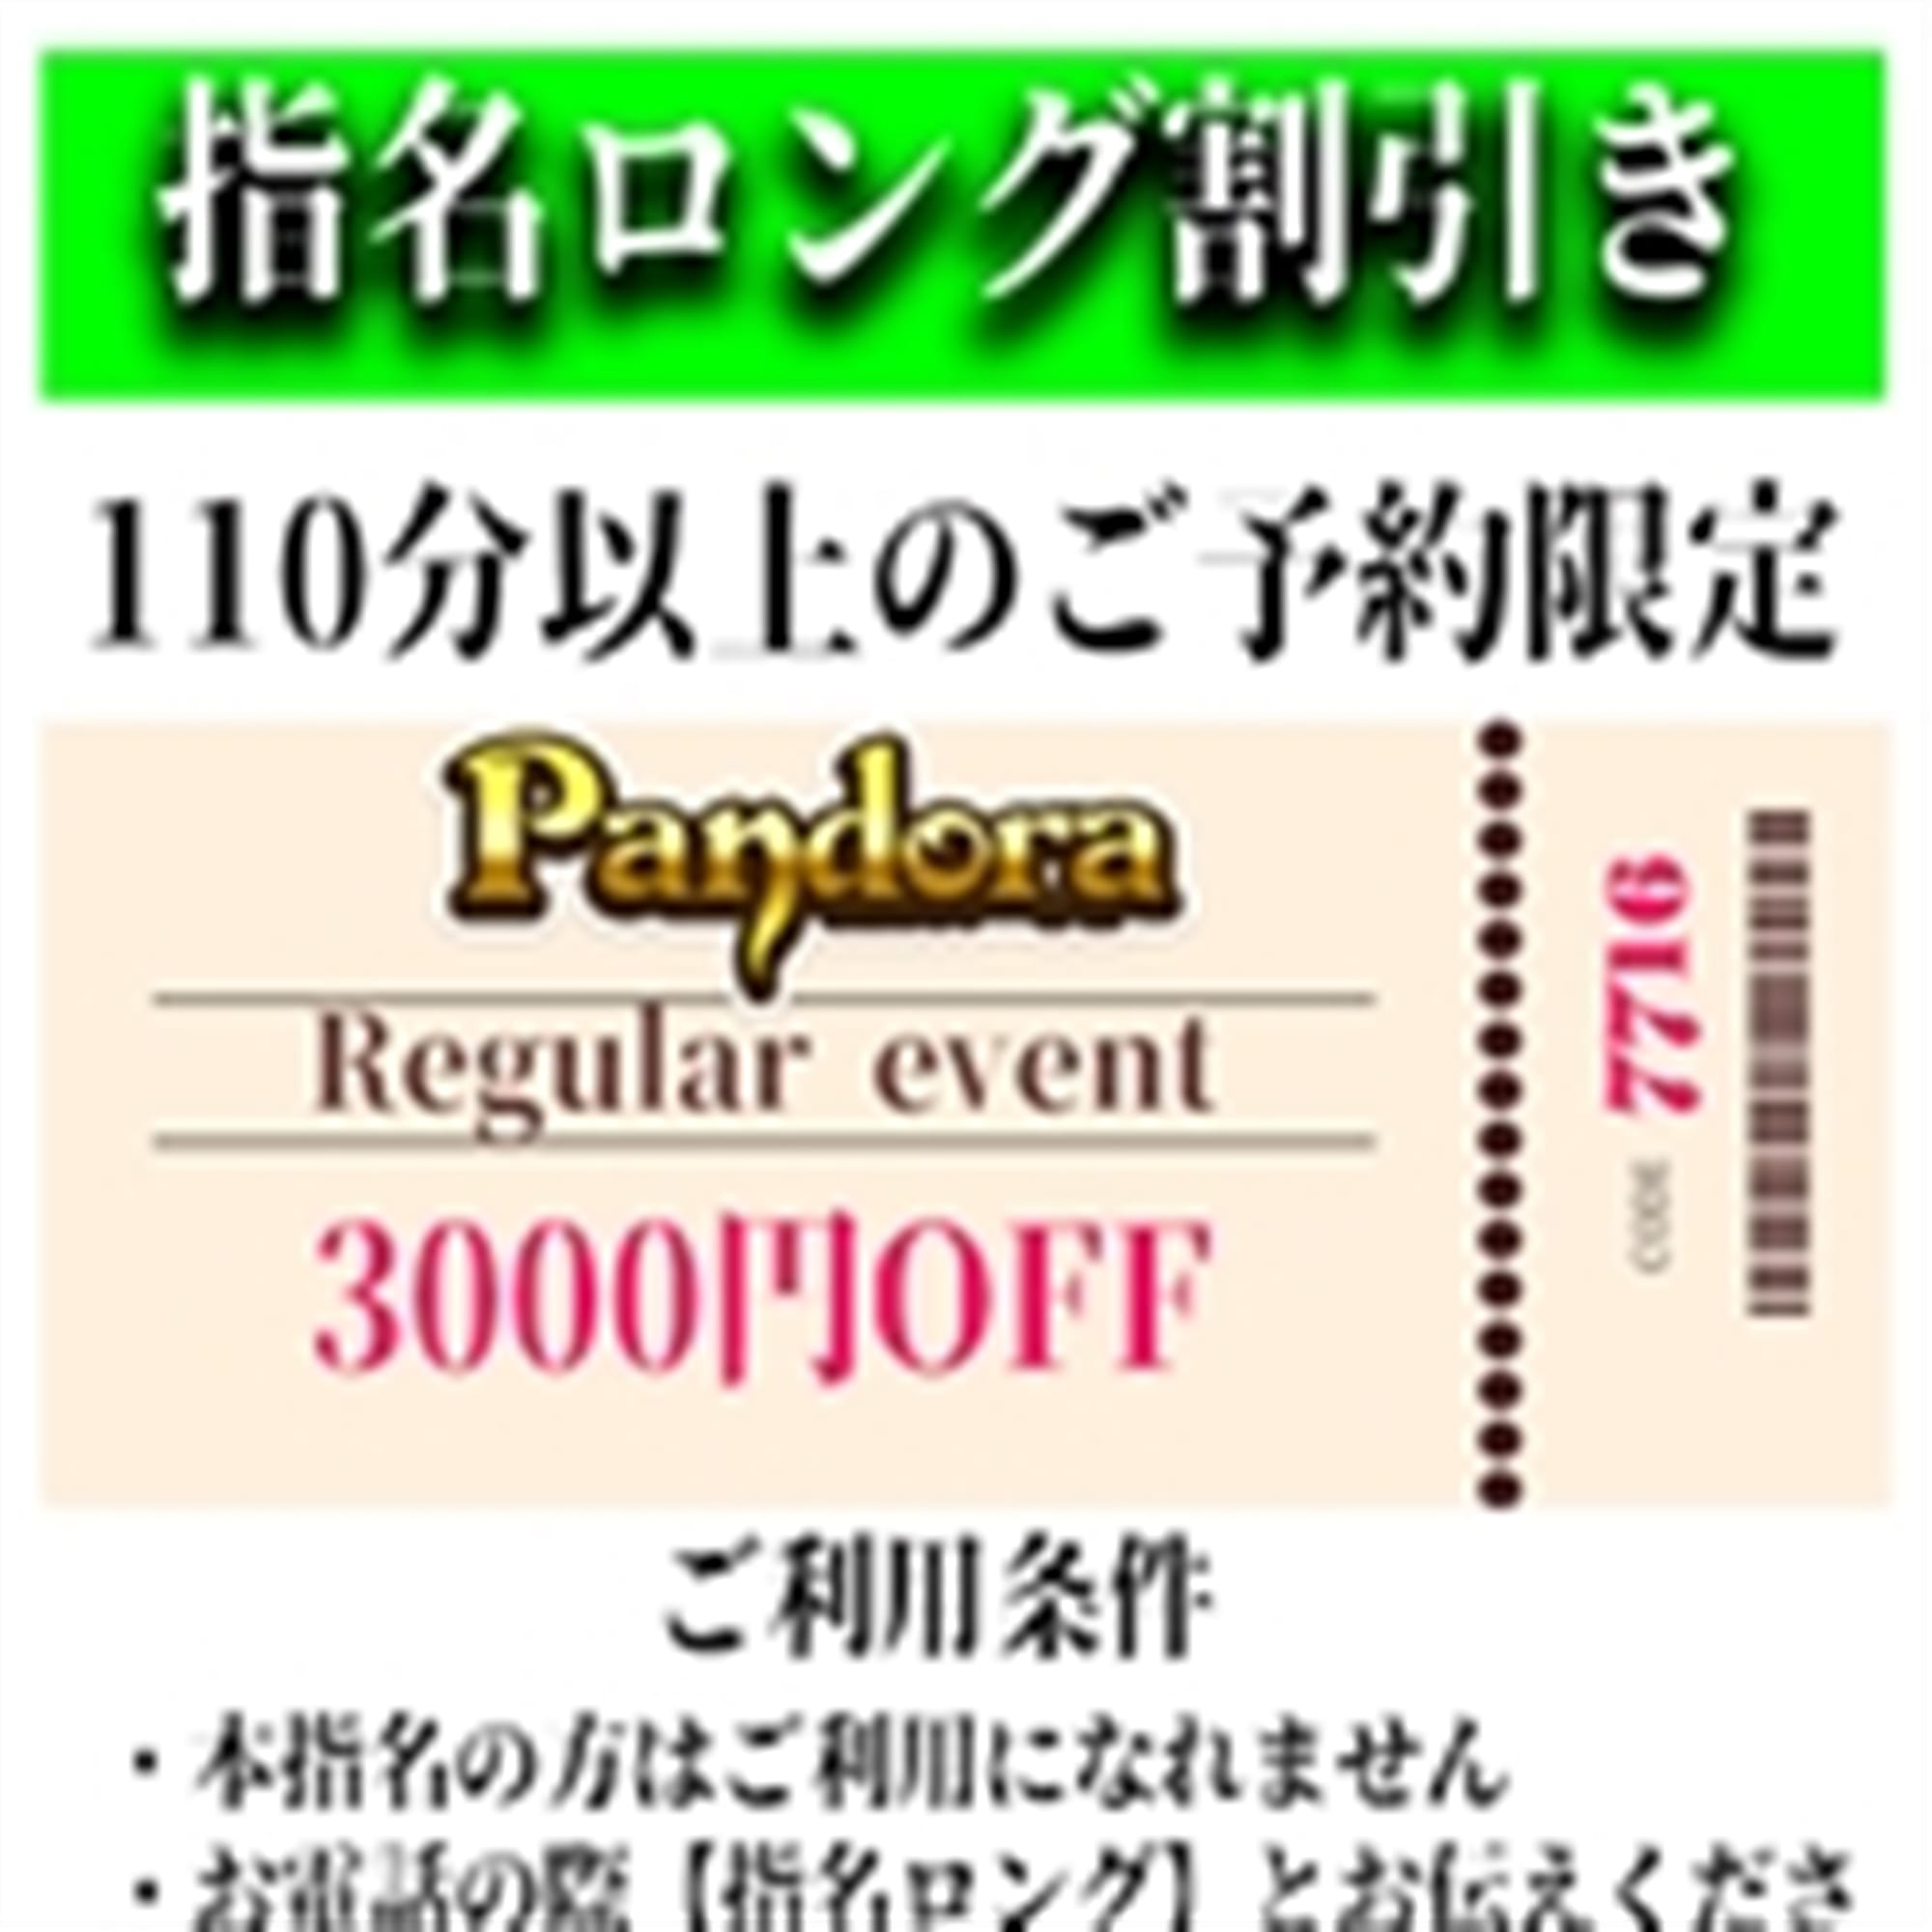 「ご指名のお客様も遊べるロングコース割引」04/25(木) 04:49 | Pandora(パンドラ)新潟のお得なニュース